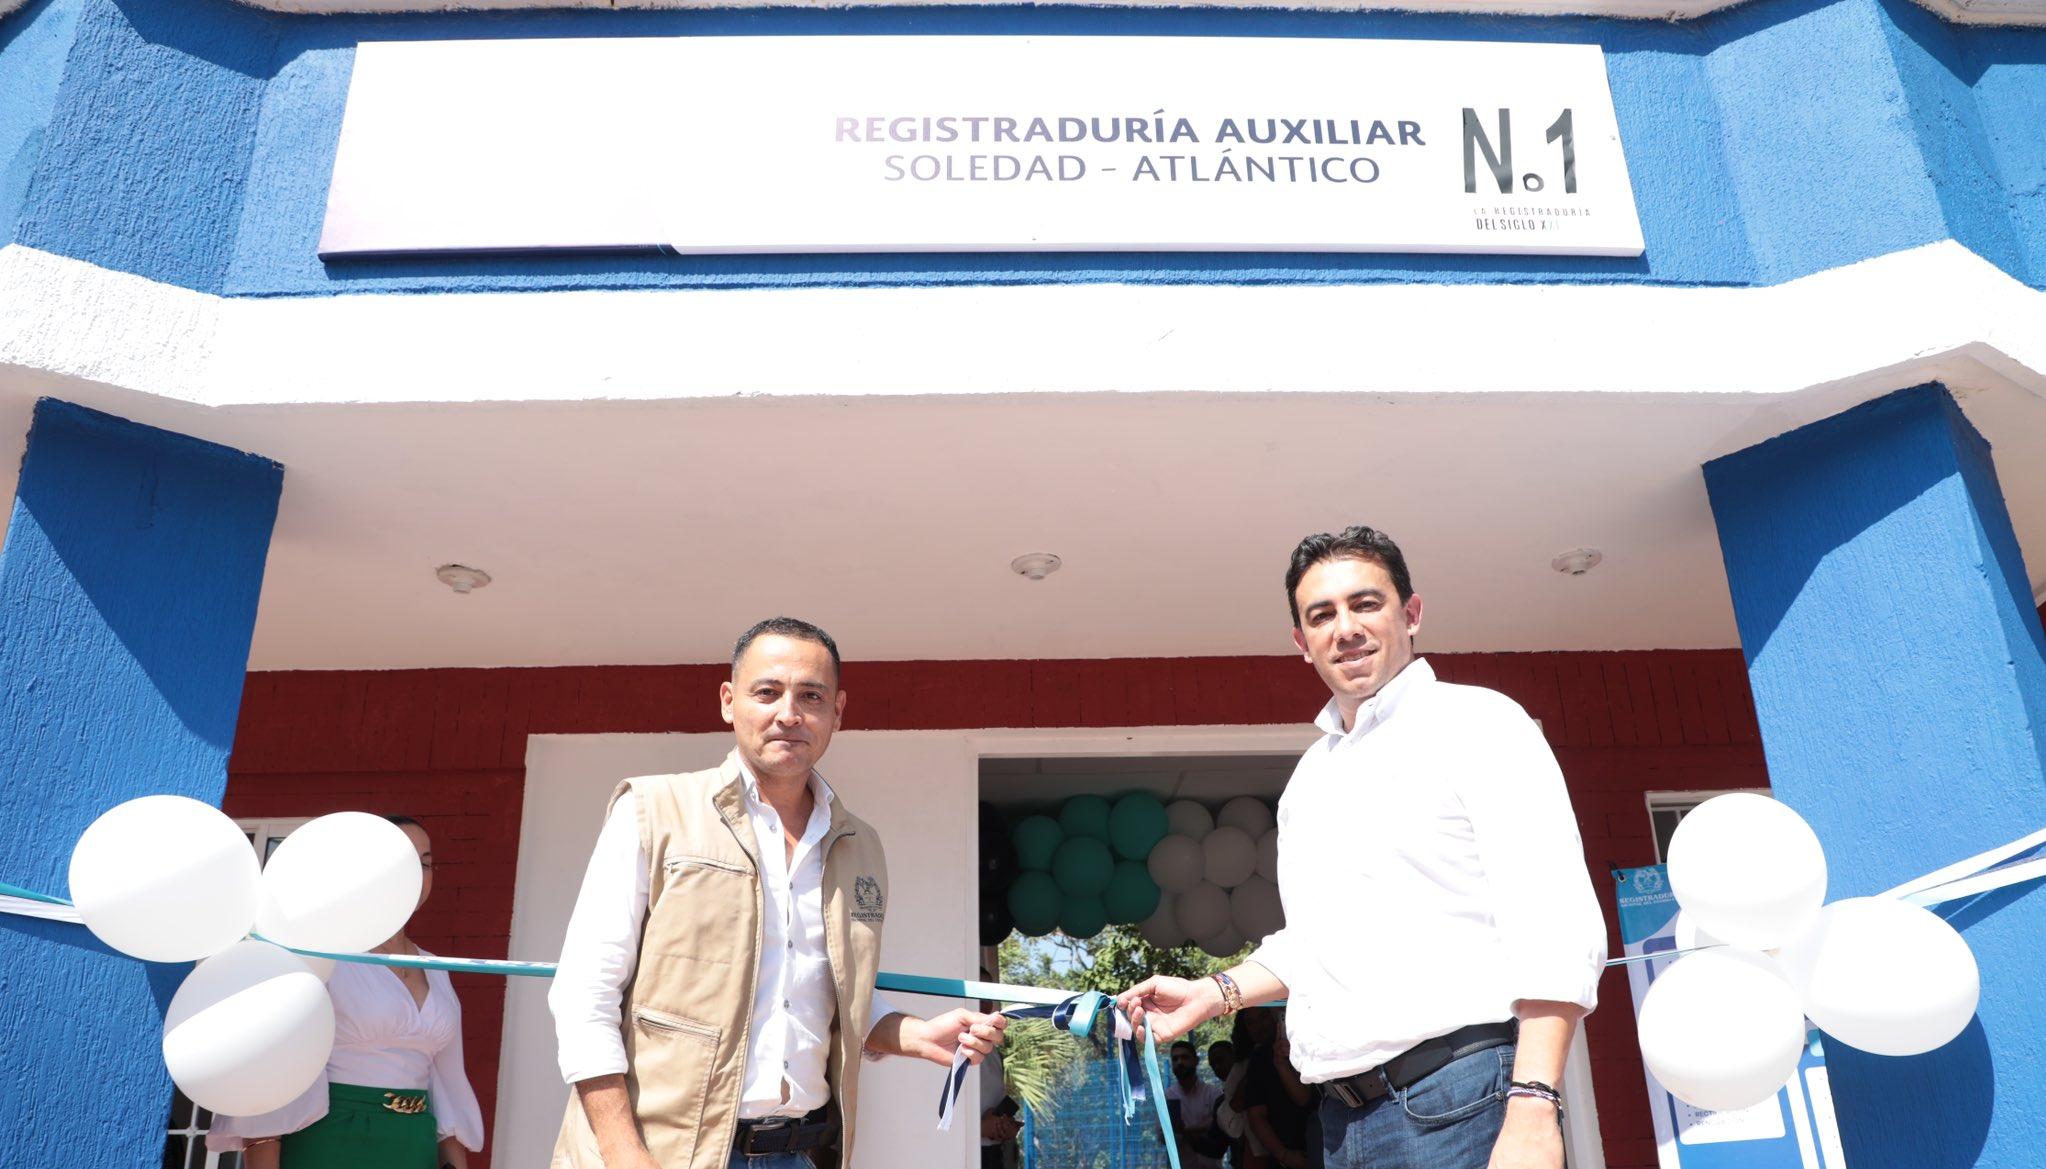 Alexander Vega Rocha, Registrador Nacional inaugurando la sede en Soledad.